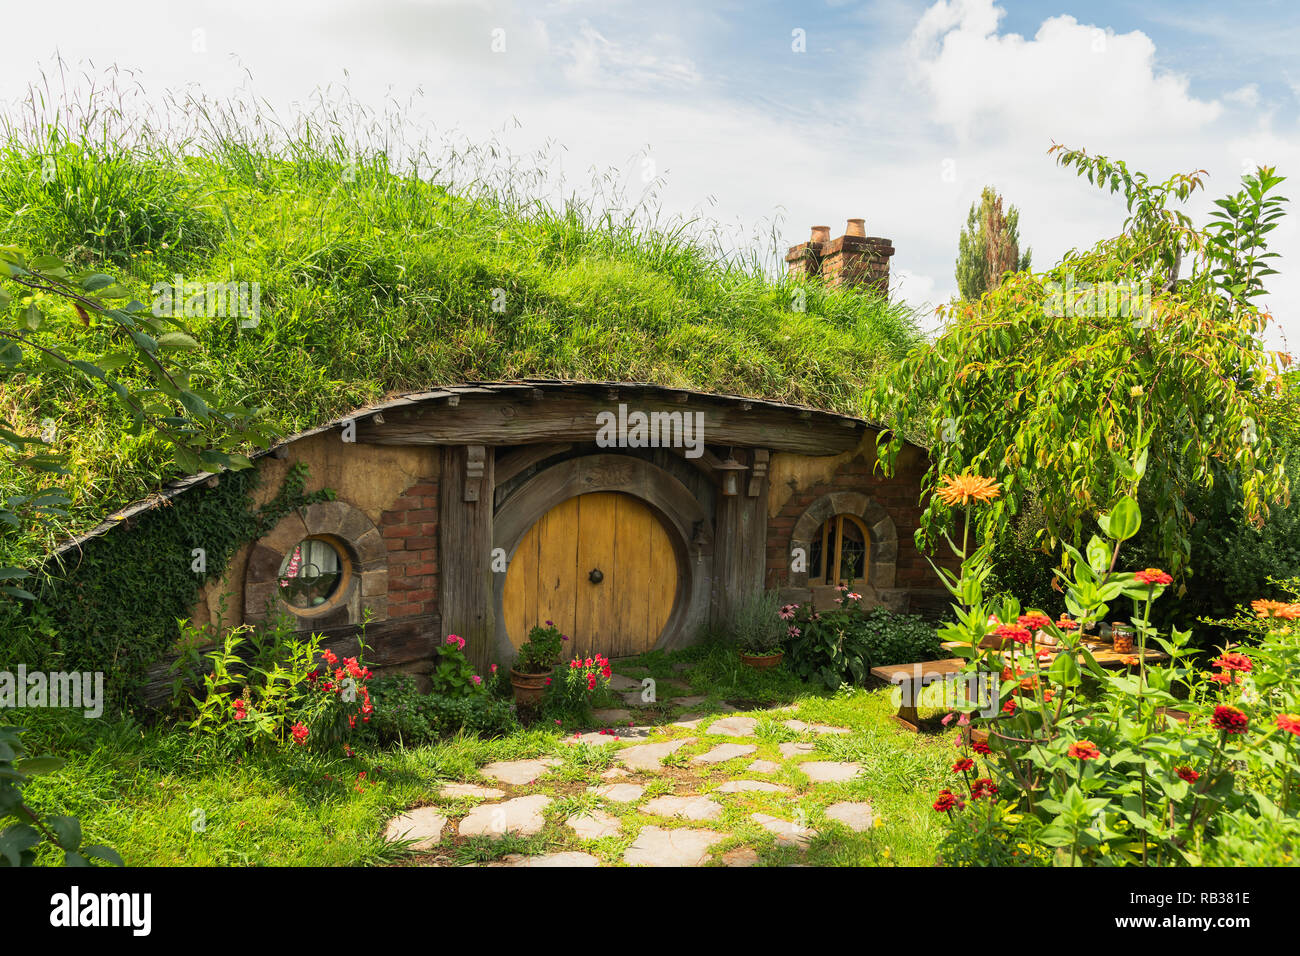 A Hobbit Hole in the Shire at Hobbiton, Matamata, New Zealand, January 21, 2018 Stock Photo